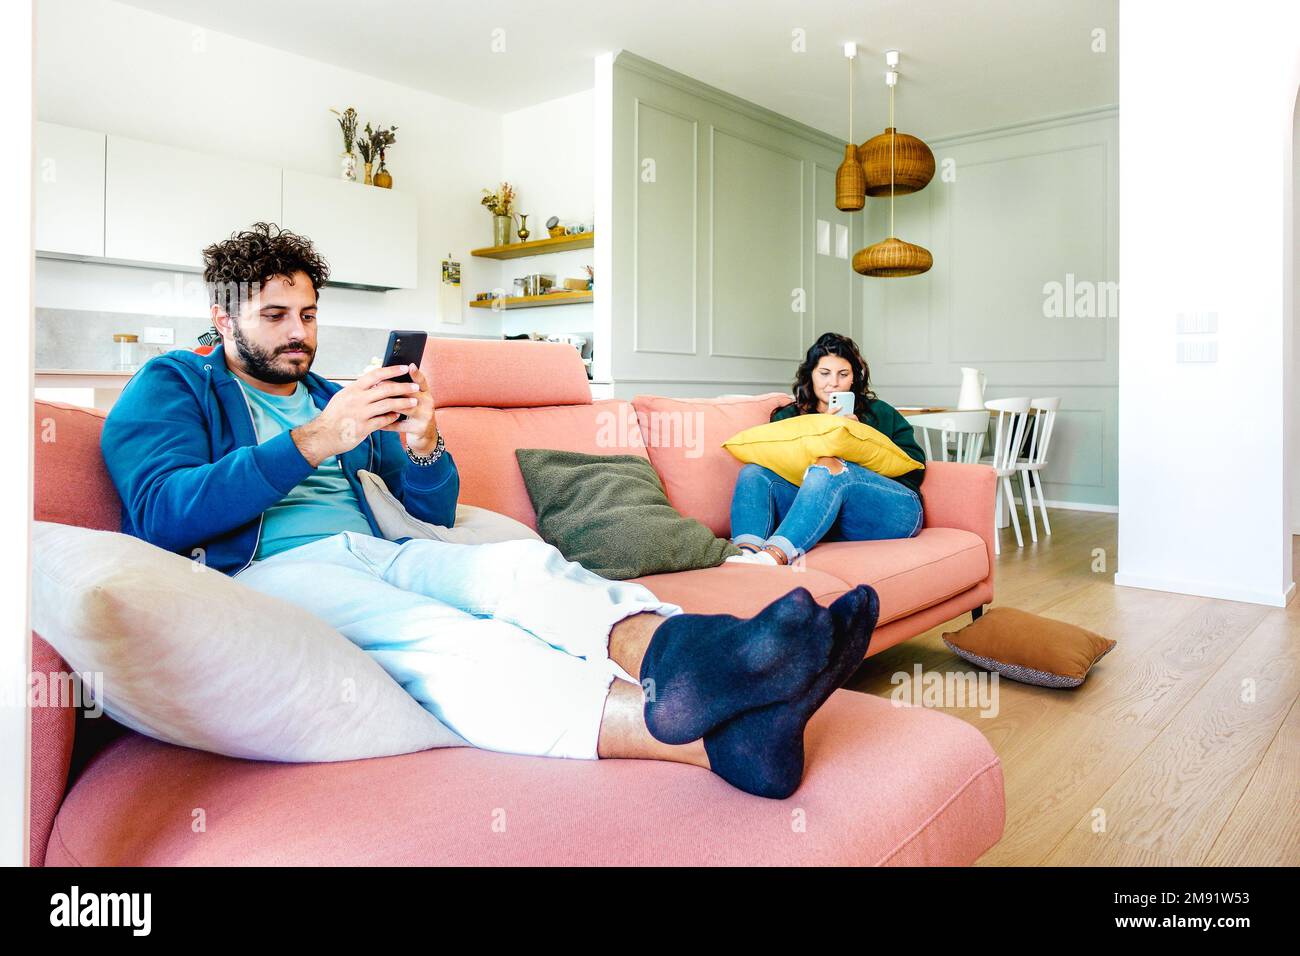 Gelangweiltes Paar im desinteressierenden Moment, das sich gegenseitig zu Hause mit dem Handy ignoriert - Konzept der Apathie Traurigkeit bei Mann und Frau süchtig Stockfoto